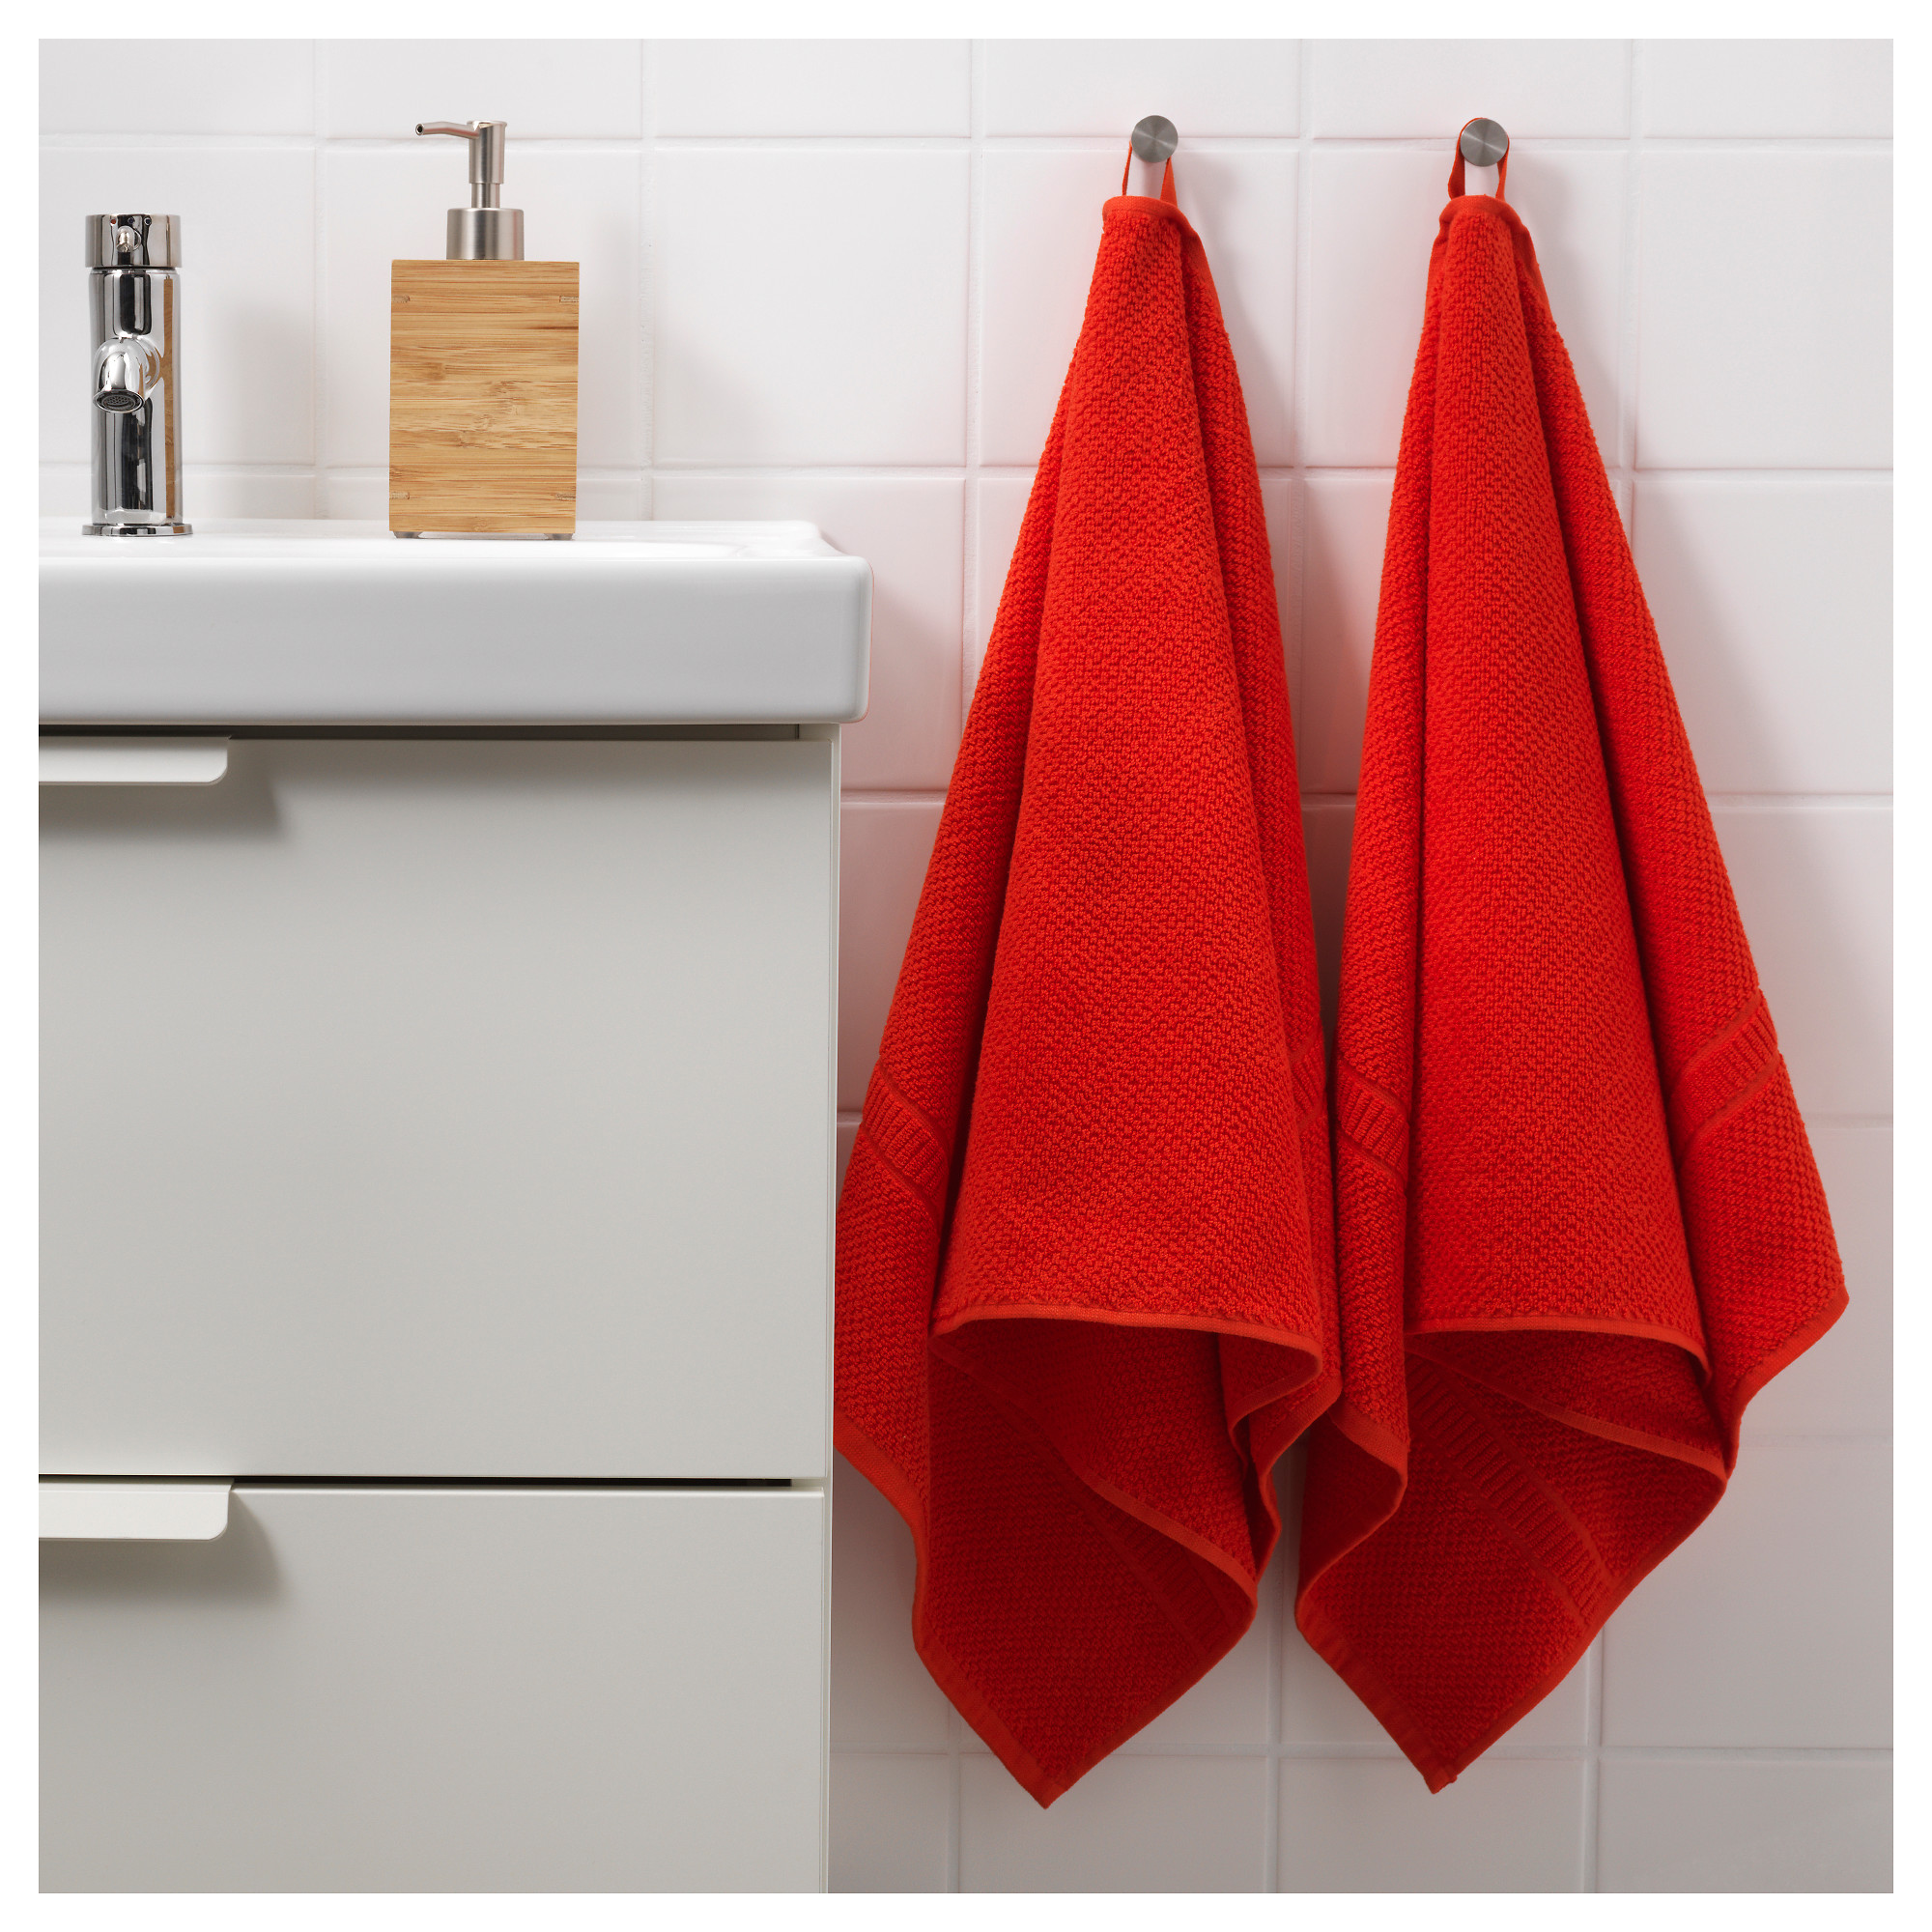 Полотенце весит. Красное полотенце. Полотенце висит. Красное полотенце висит. Полотенца икеа красные.